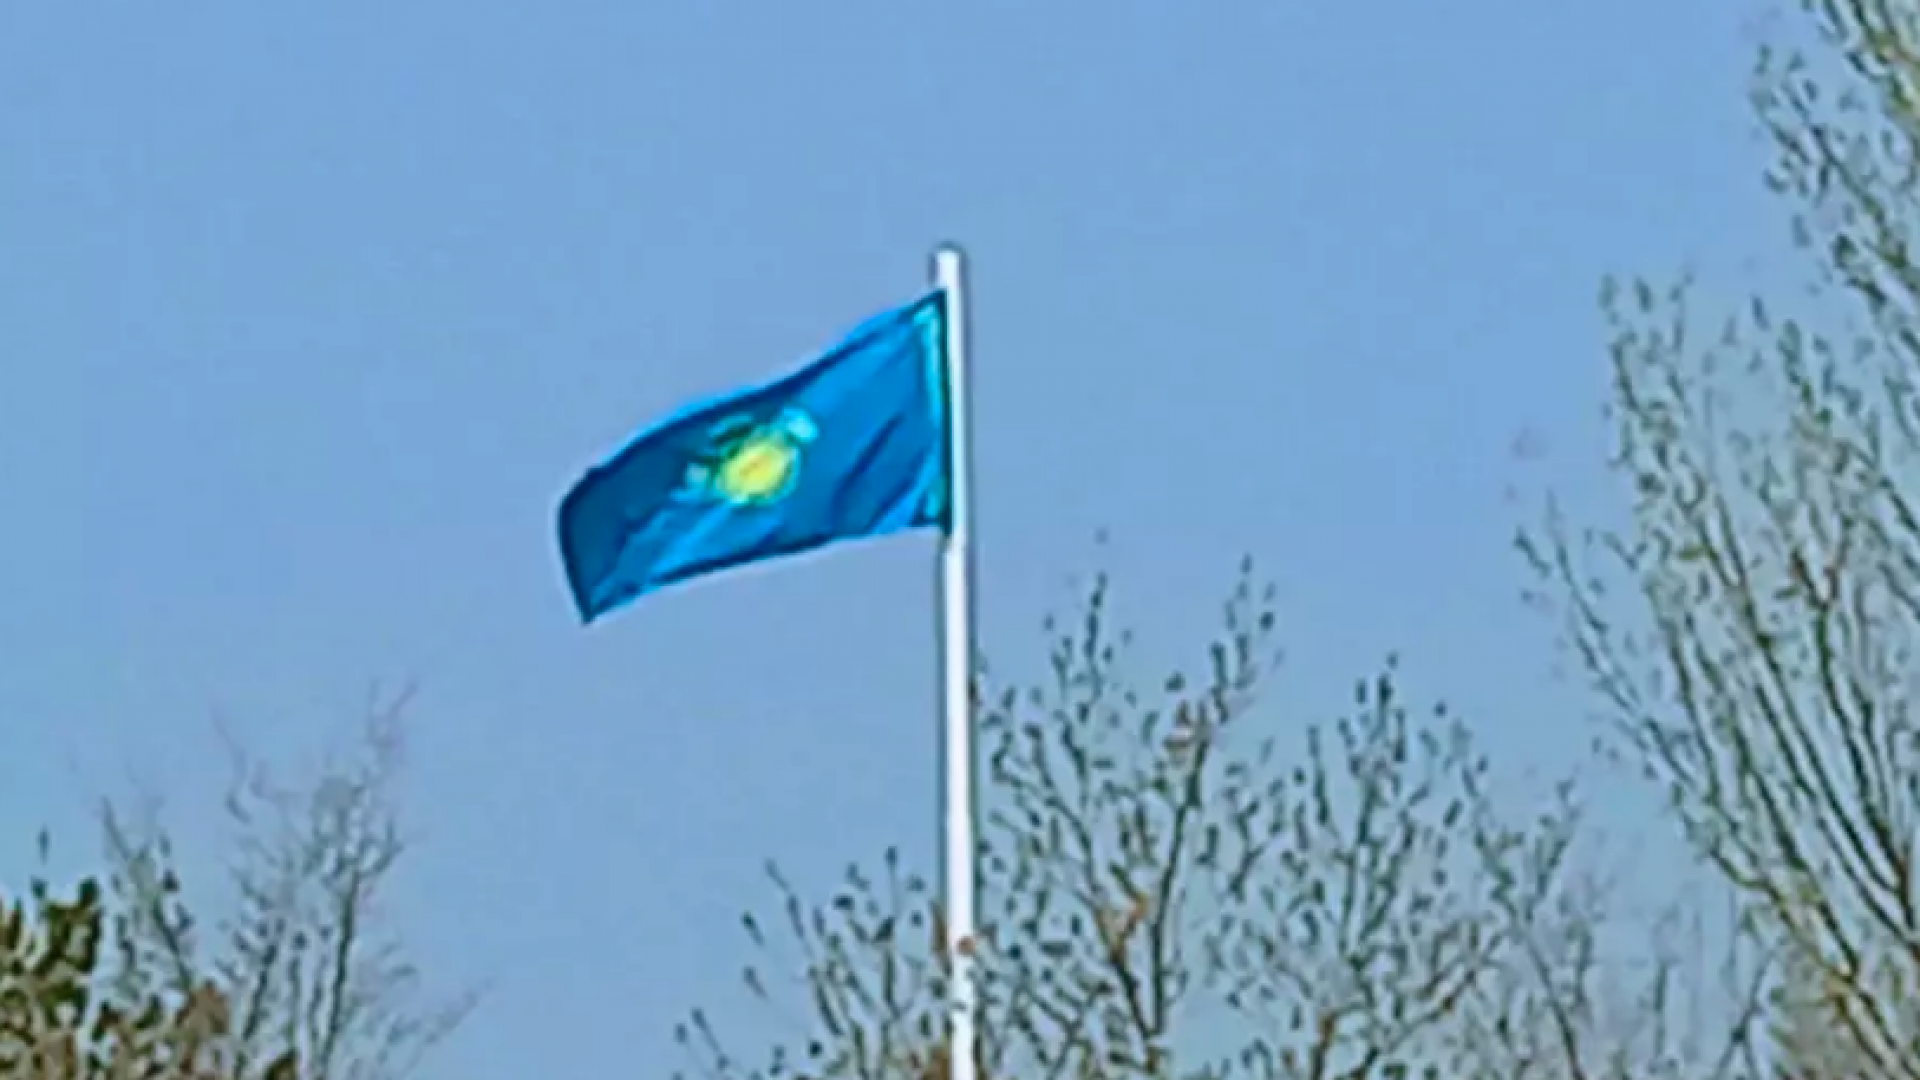 Шок! Перевернутый флаг Казахстана в Астане! Узнайте подробности!